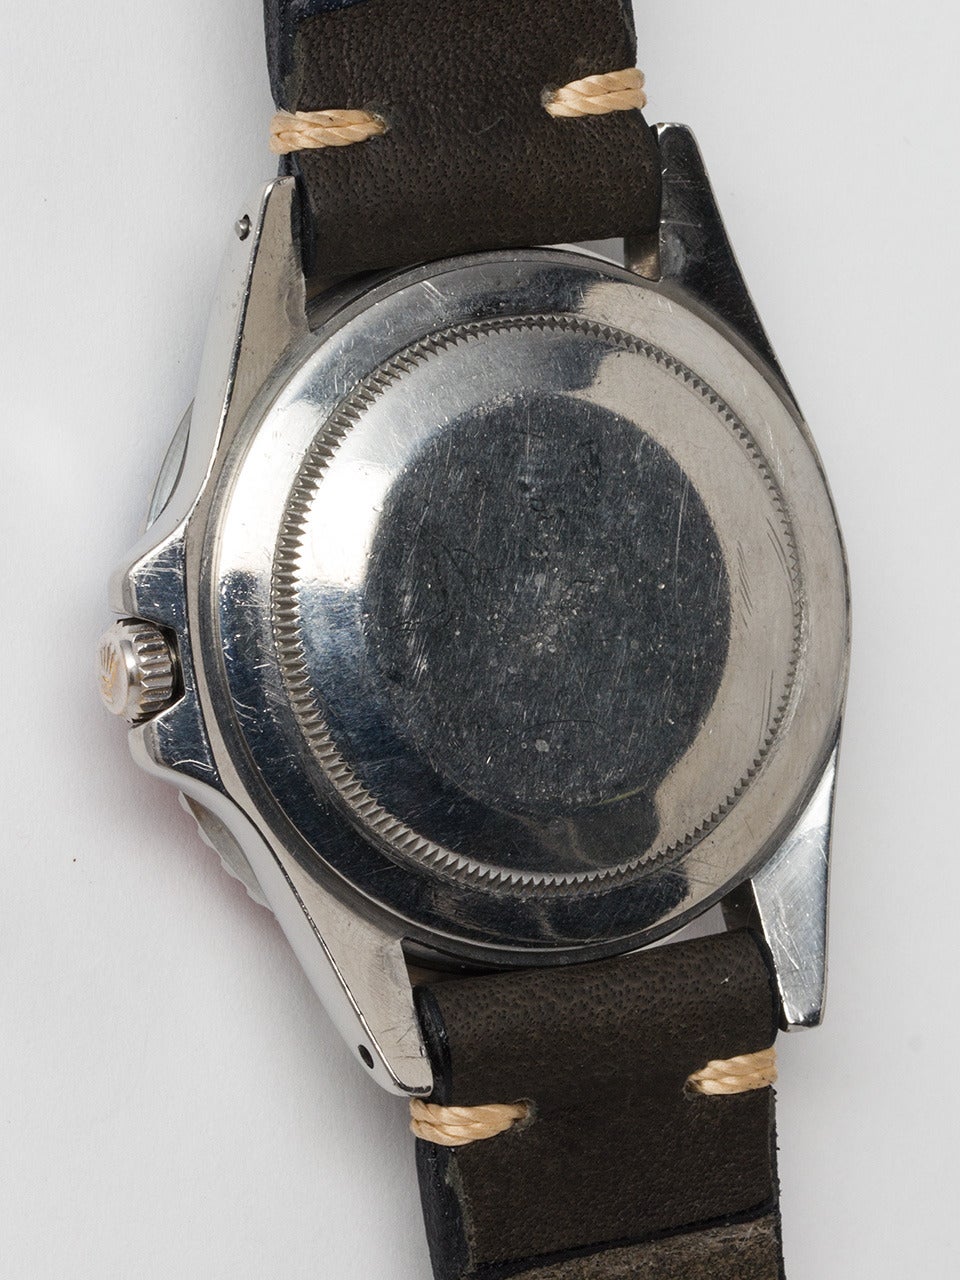 Men's Rolex Stainless Steel GMT-Master Chronometer Wristwatch Ref 16750